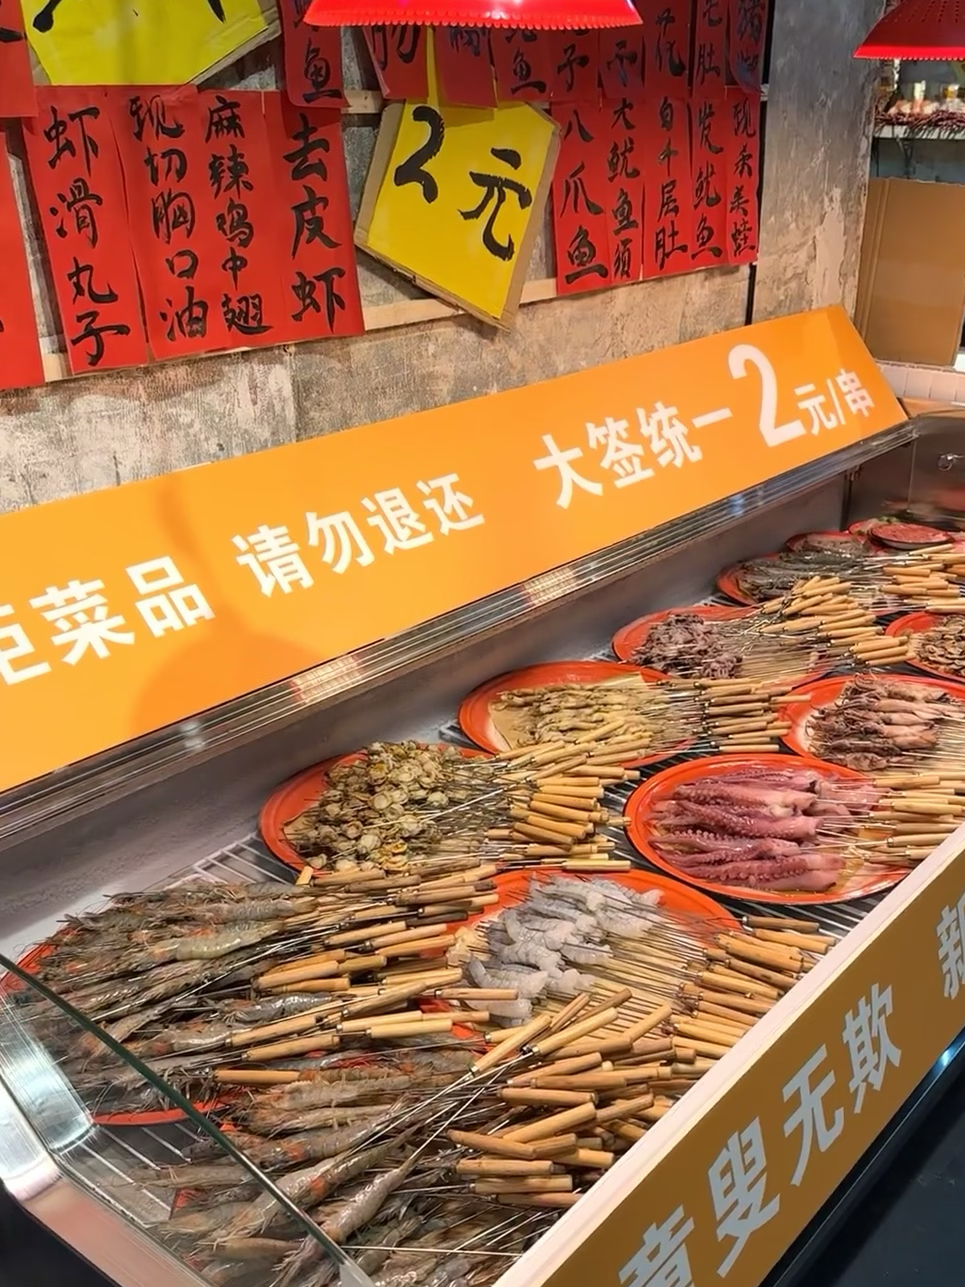 瞬间对重庆产生了敬意。。。全都 2r!!!#日常碎片PLOG 近期吃到的一家居民楼串串，巴掌大的虾、